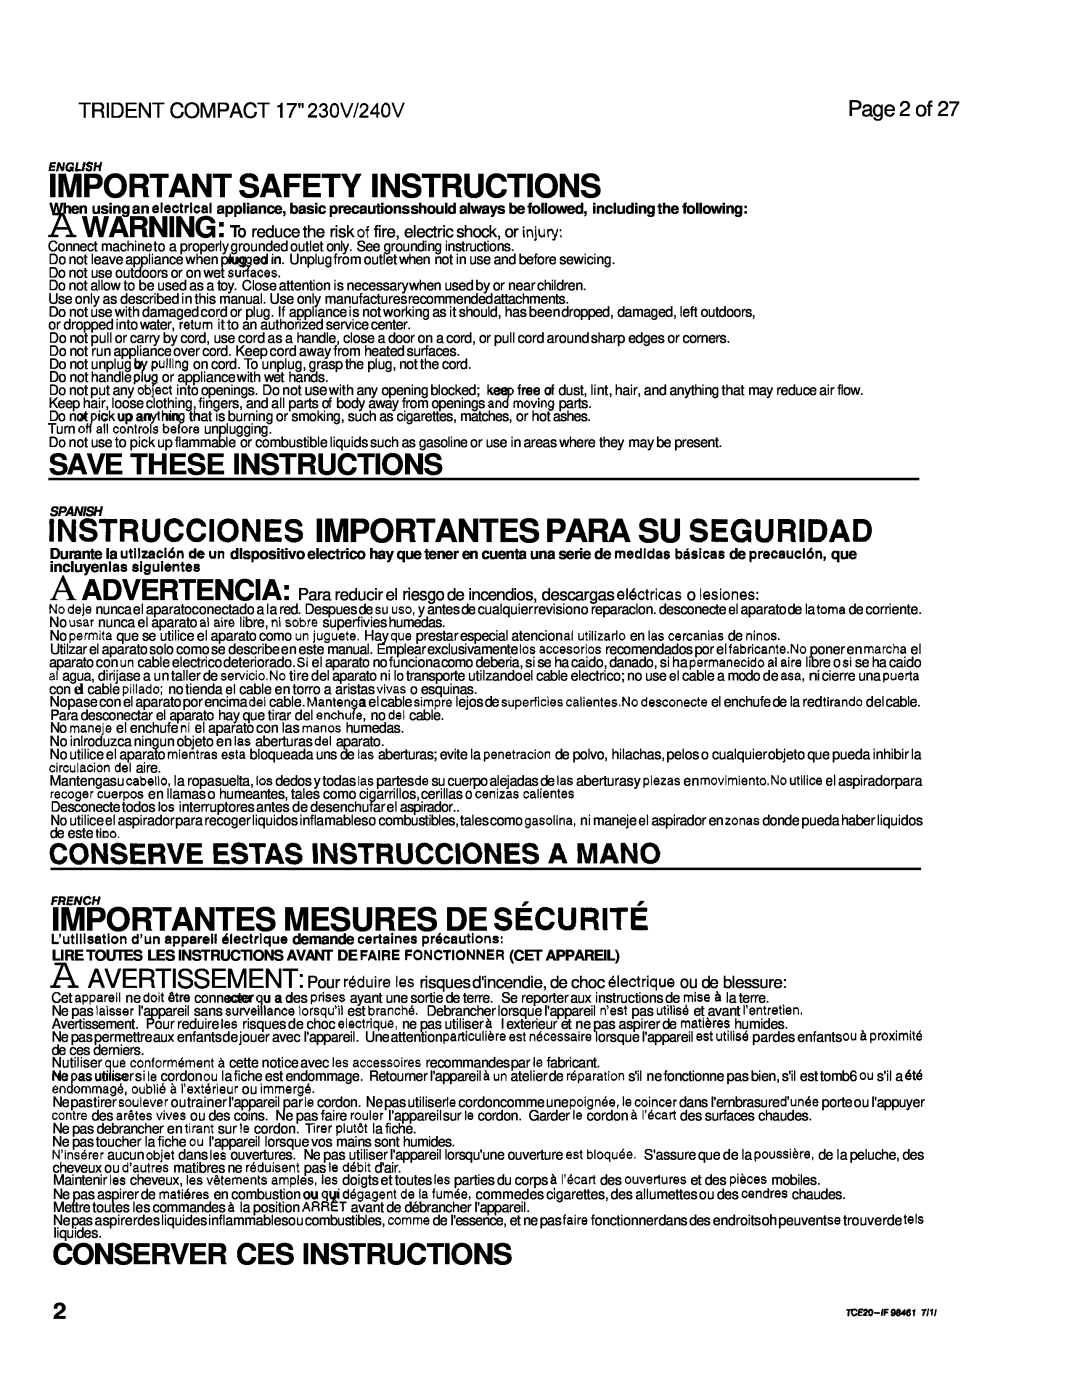 Windsor 230V Important Safety Instructions, Instrucciones Importantes Para Su Seguridad, Importantes Mesures De Securite 